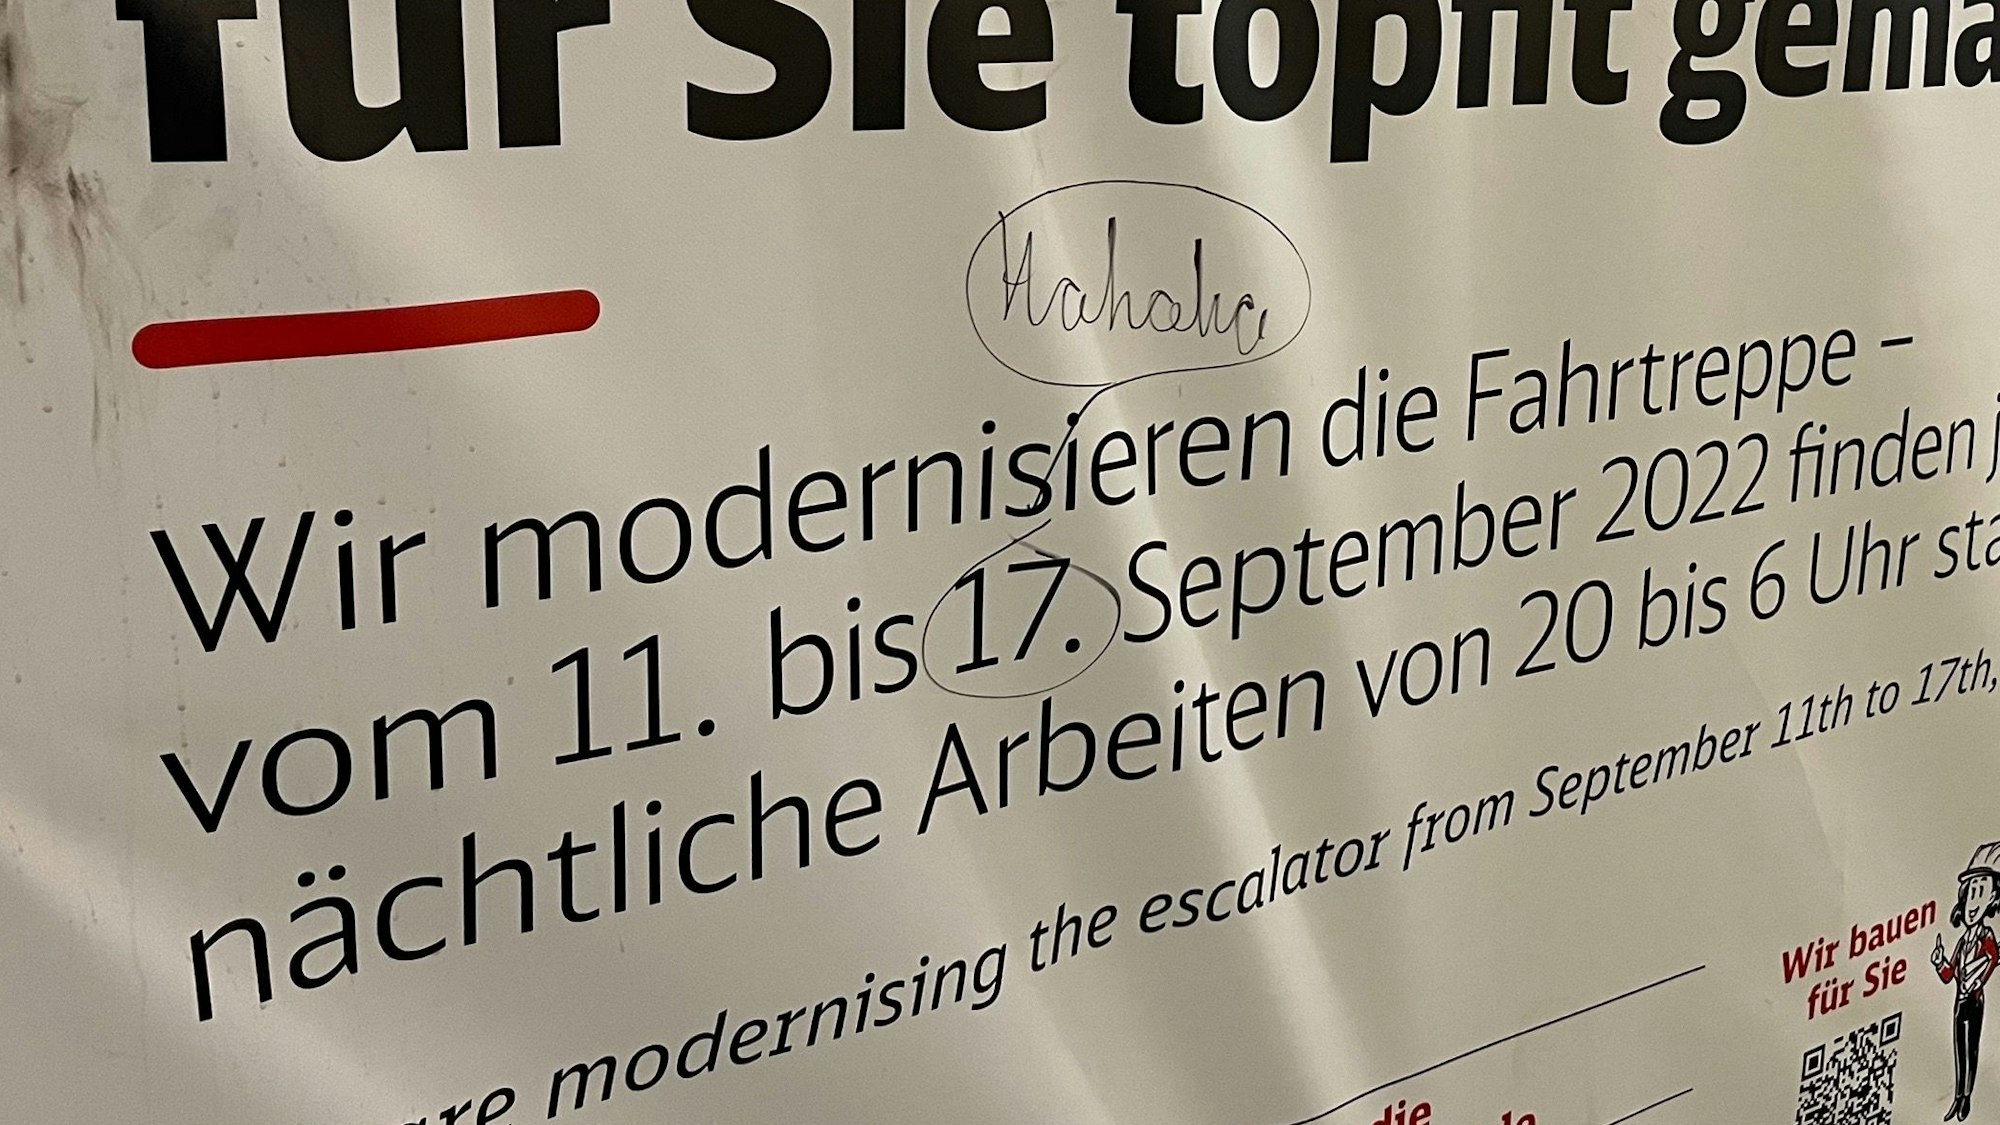 Das aktuelle Plakat im Bahnhof Köln-Ehrenfeld weist noch auf das Bauende am 17. September 2022 hin. Bald wird dort ein neues Plakat hängen. Denn die Baumaßnahmen gehen noch weiter.